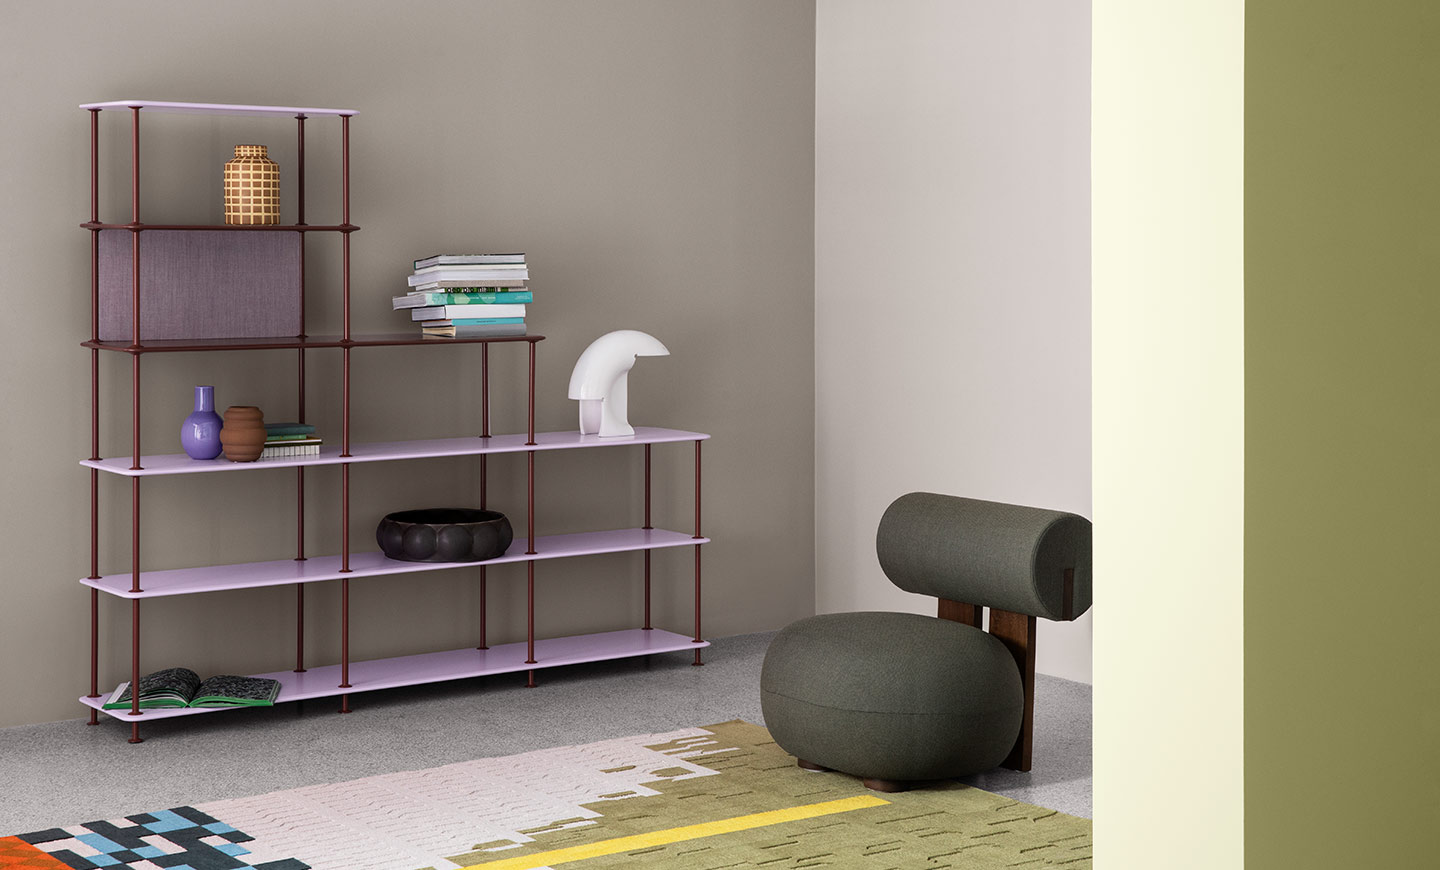 Bilde av hylle og designerstol foran malt vegg. Grålig lavendertone: 20186 Lavender Touch er litt kjølig i uttrykket og er perfekt for store vegger. Den står flott til andre farger, som 8565 Hope her til høyre. Her malt med LADY Pure Color. 